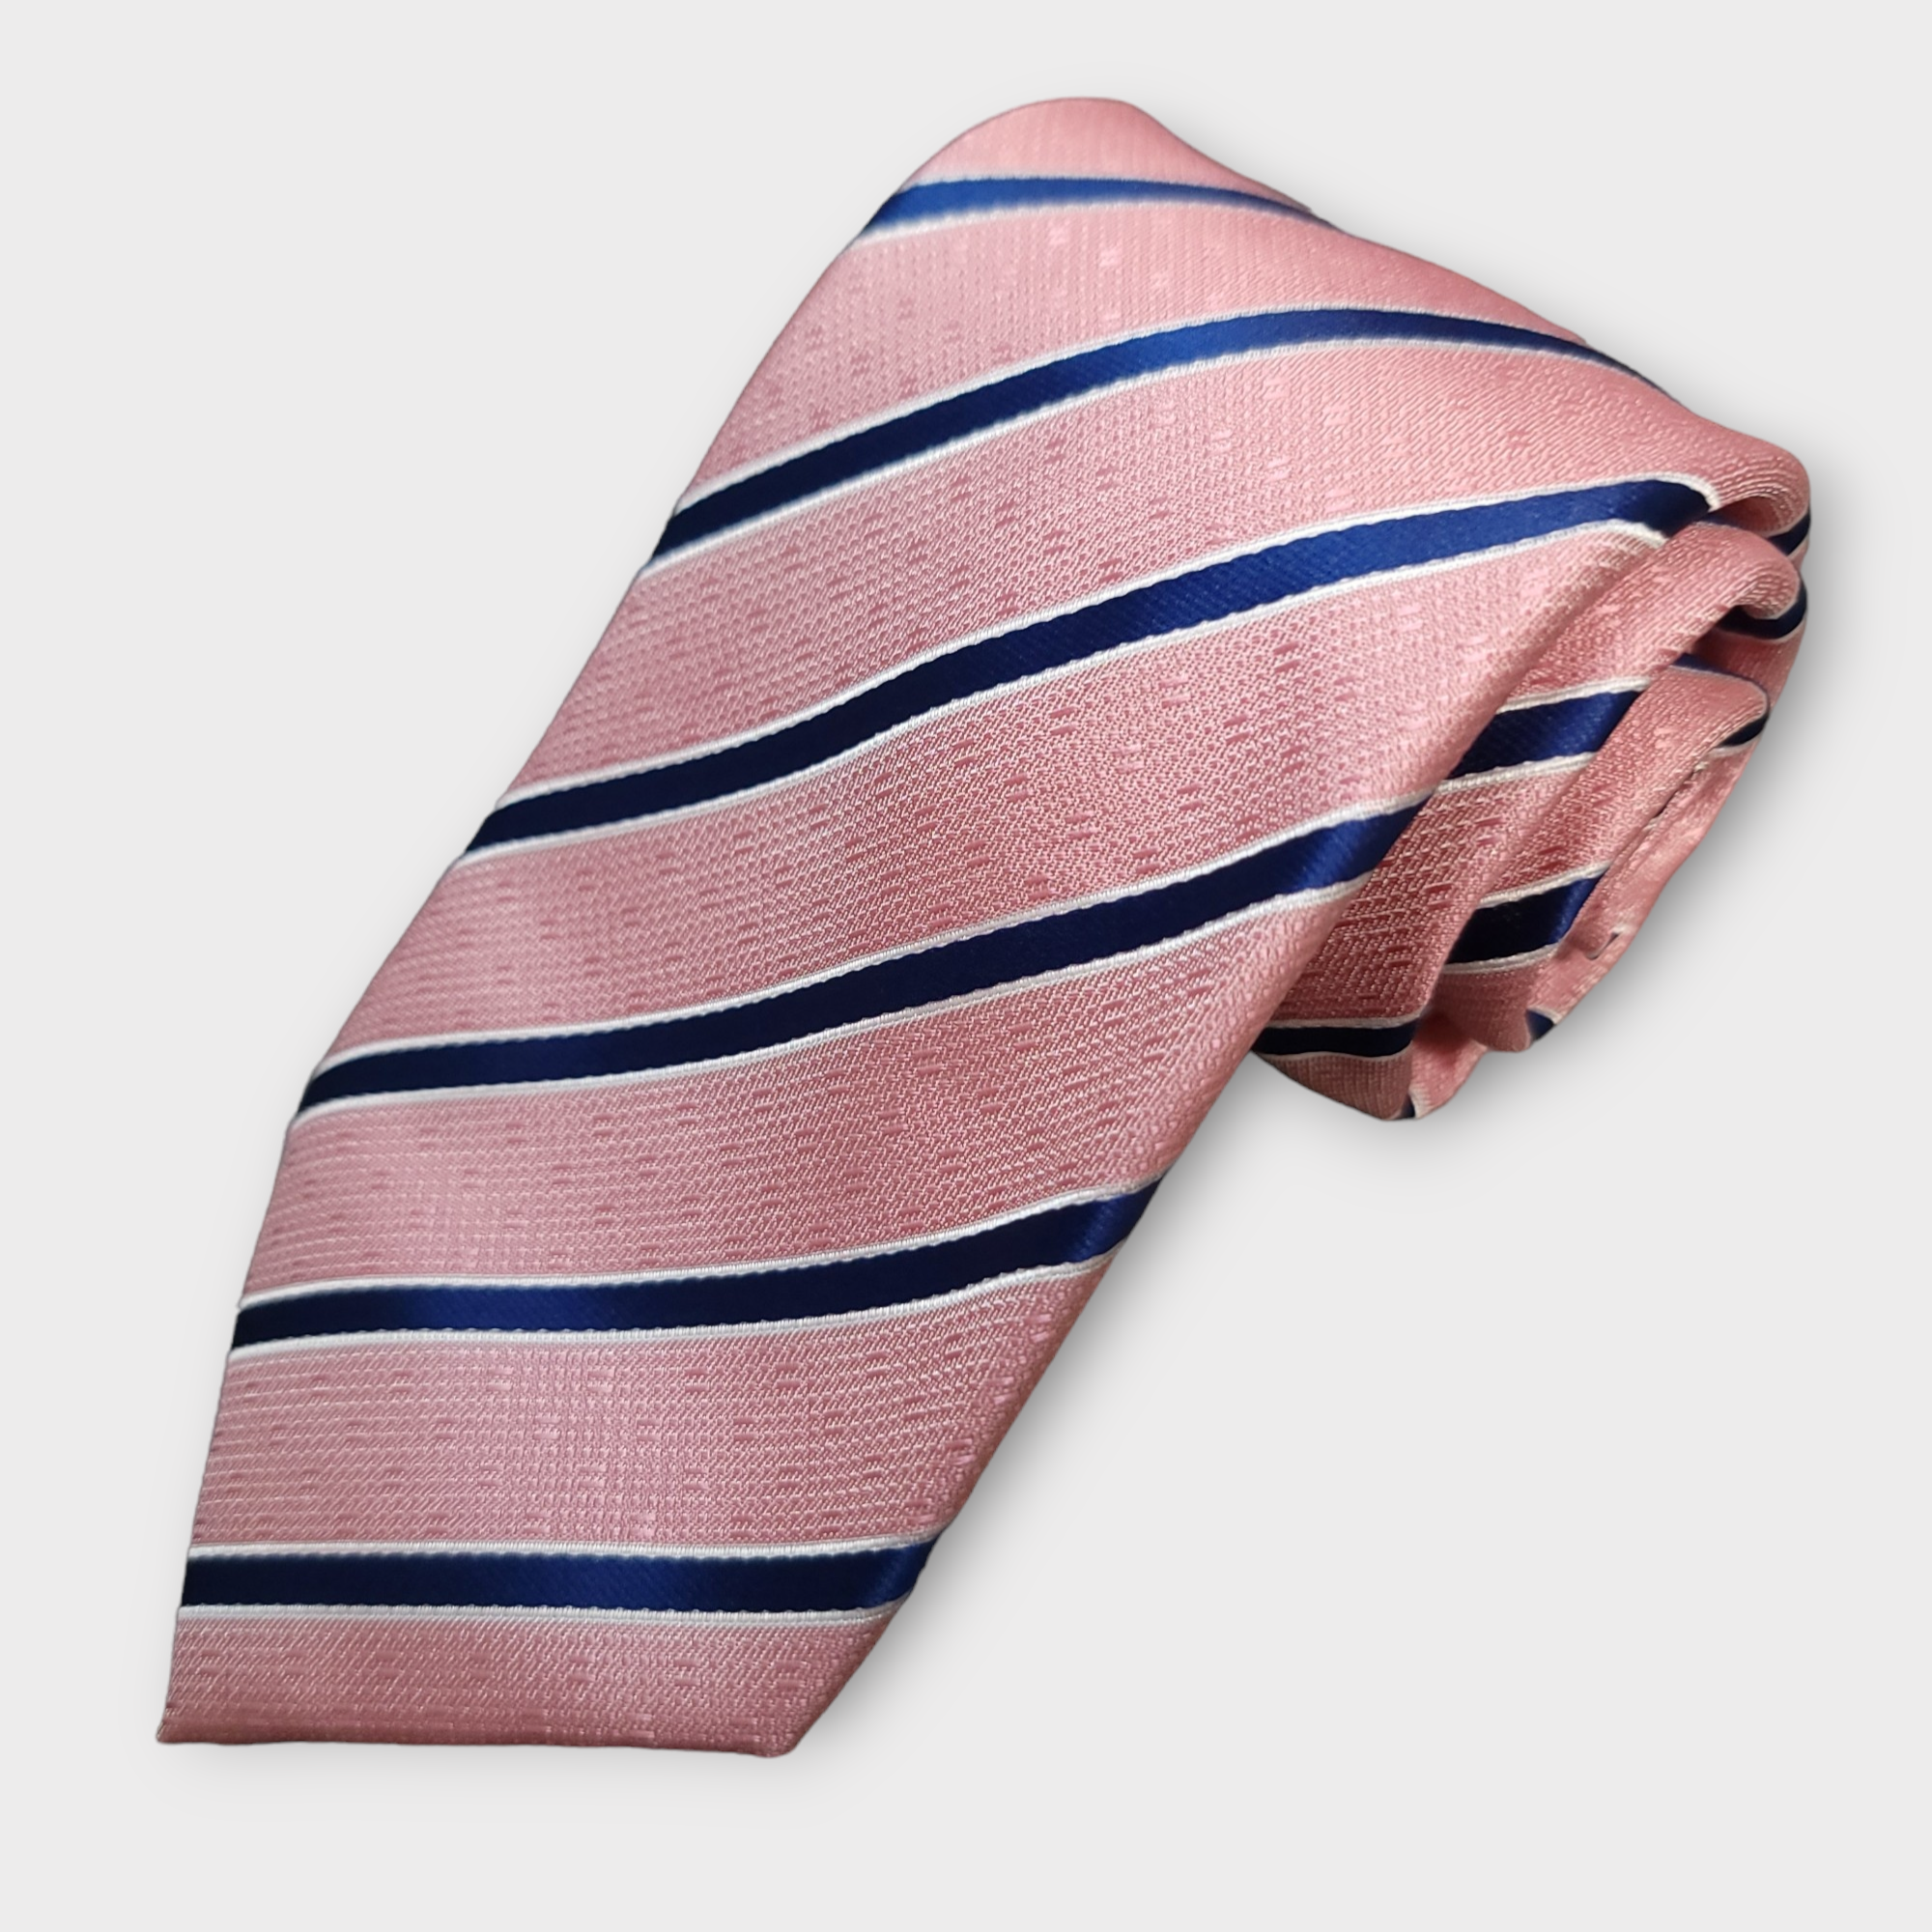 Pink Striped Silk Tie Pocket Square Cufflinks Set